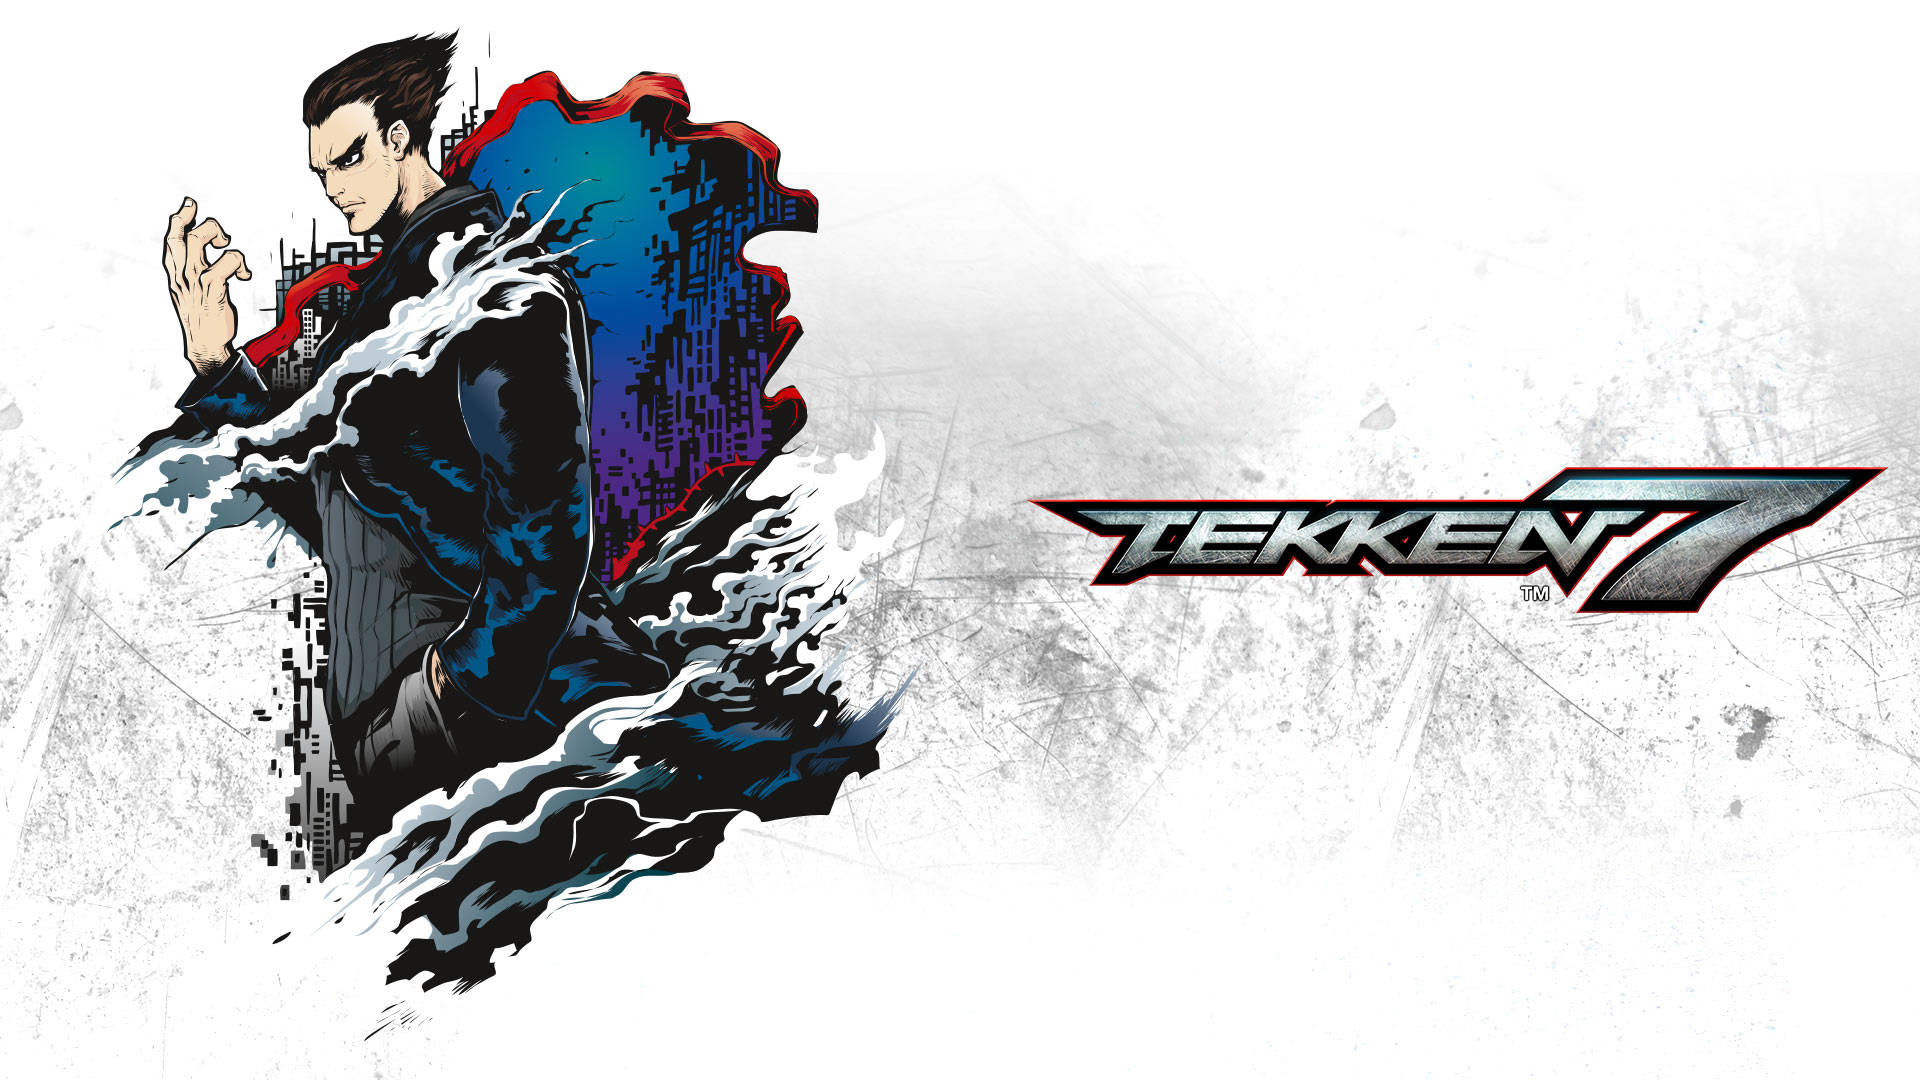 Kazuya Mishima Tekken 7 Comic Cover Tapet: Dette blændende tapet giver et livligt udvalg af Kazuya Mishima fra Tekken 7 Comic Cover. Wallpaper